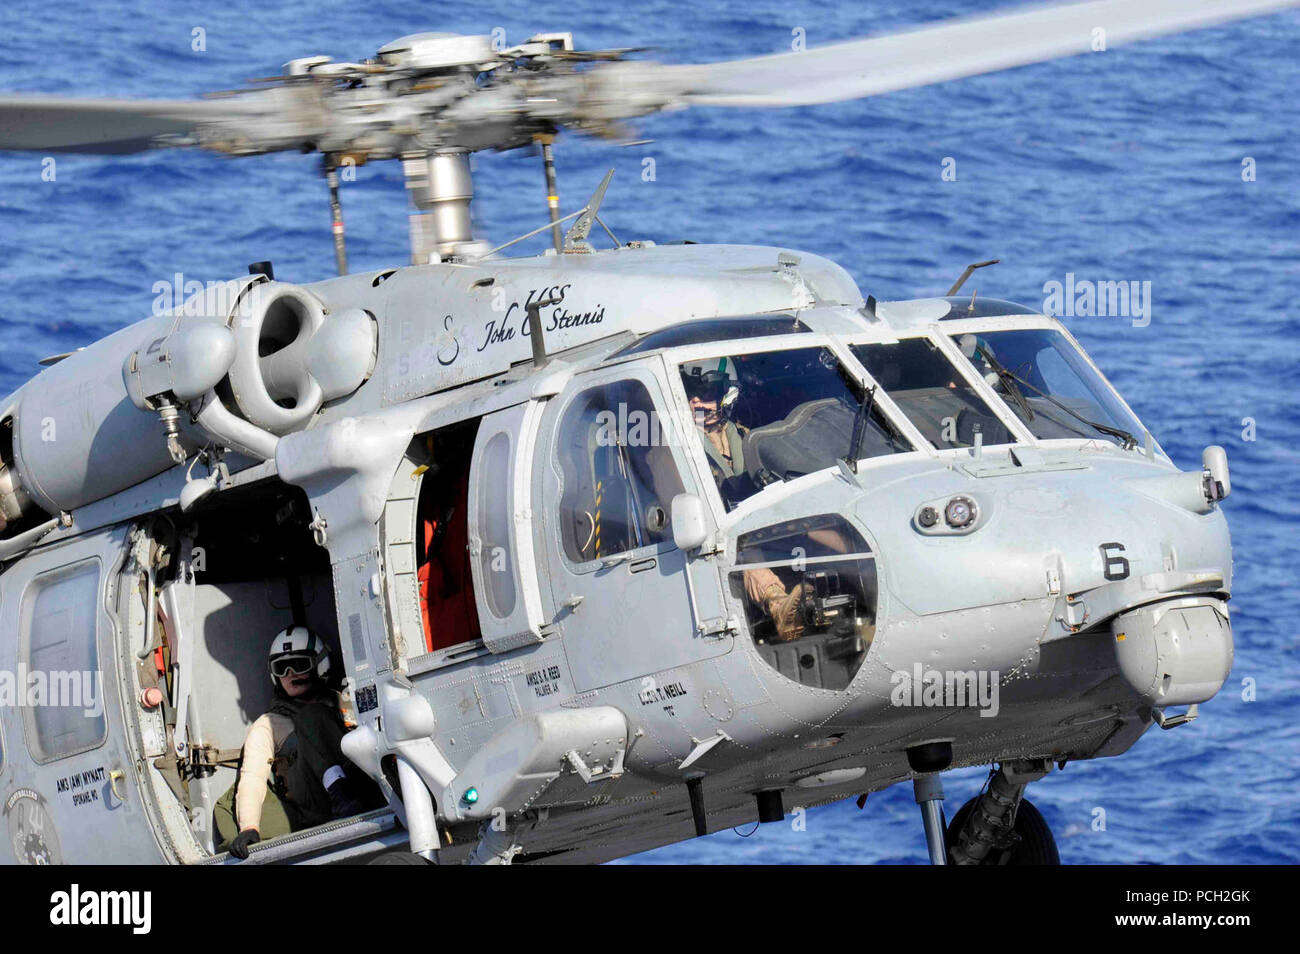 Oceano Pacifico (Aprile 14,2013) un MH-60S Sea Hawk elicottero dall'Eightballers di elicottero di mare squadrone di combattimento (HSC) 8 scende dal cargo militare comando Sealift flotta oliatore di rifornimento USNS Yukon (T-AO-202) per la portaerei USS John C. Stennis (CVN 74) durante un rifornimento in mare. John C. Stennis è distribuito negli Stati Uniti 7 flotta area di responsabilità condurre le operazioni di sicurezza marittima e di protezione del teatro gli sforzi di cooperazione. Foto Stock